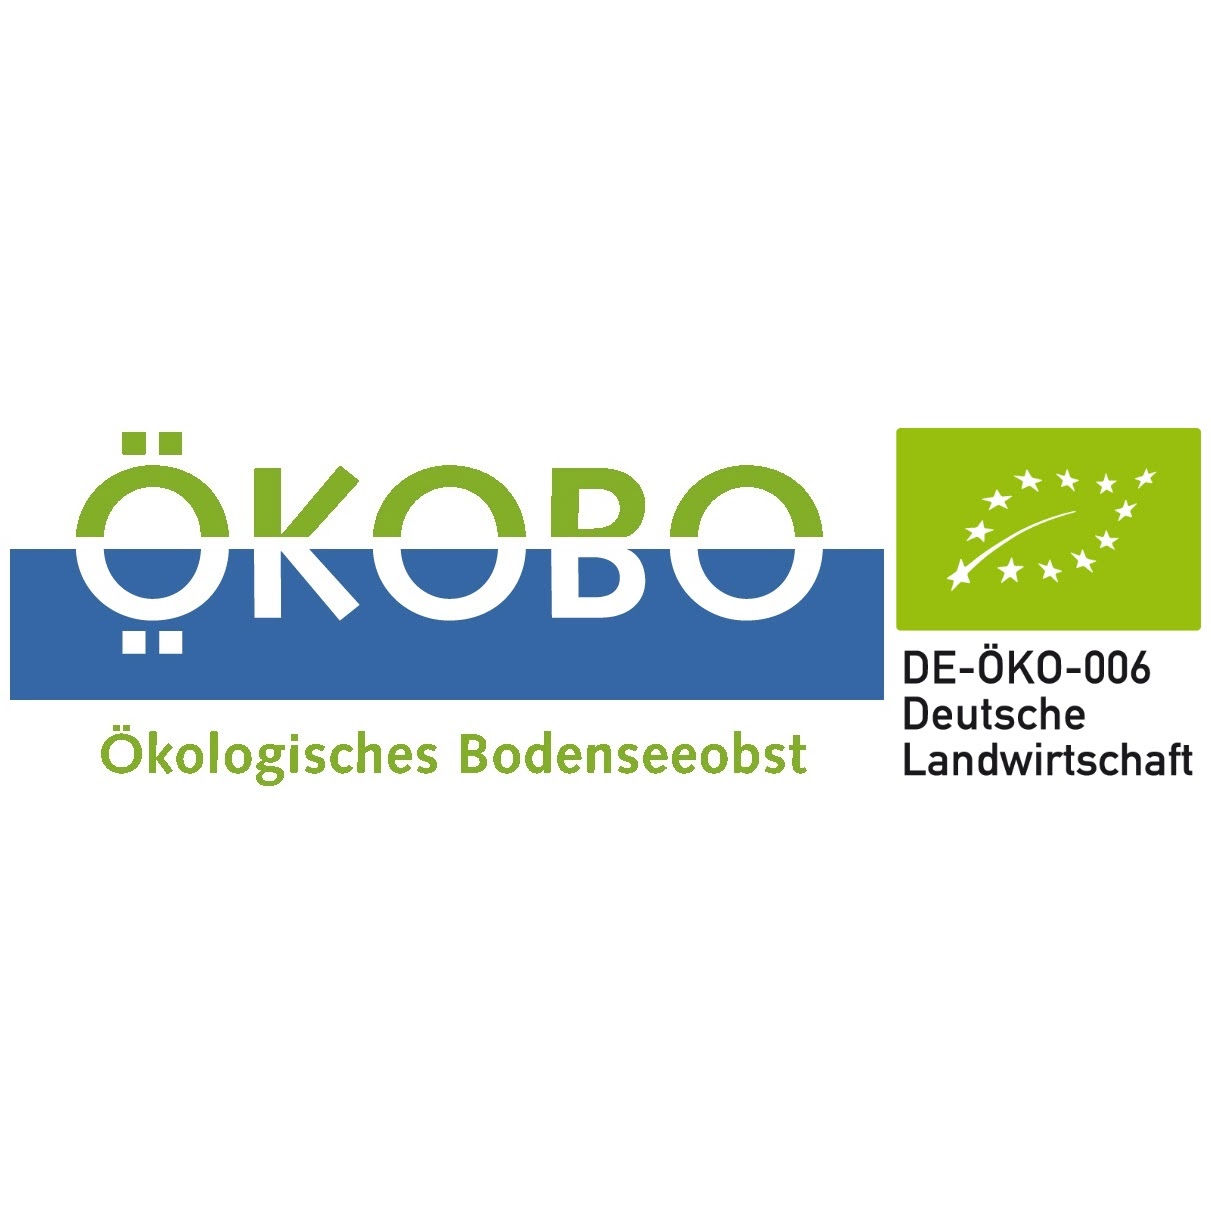 Ökobo Gmbh – Ökologisches Bodenseeobst